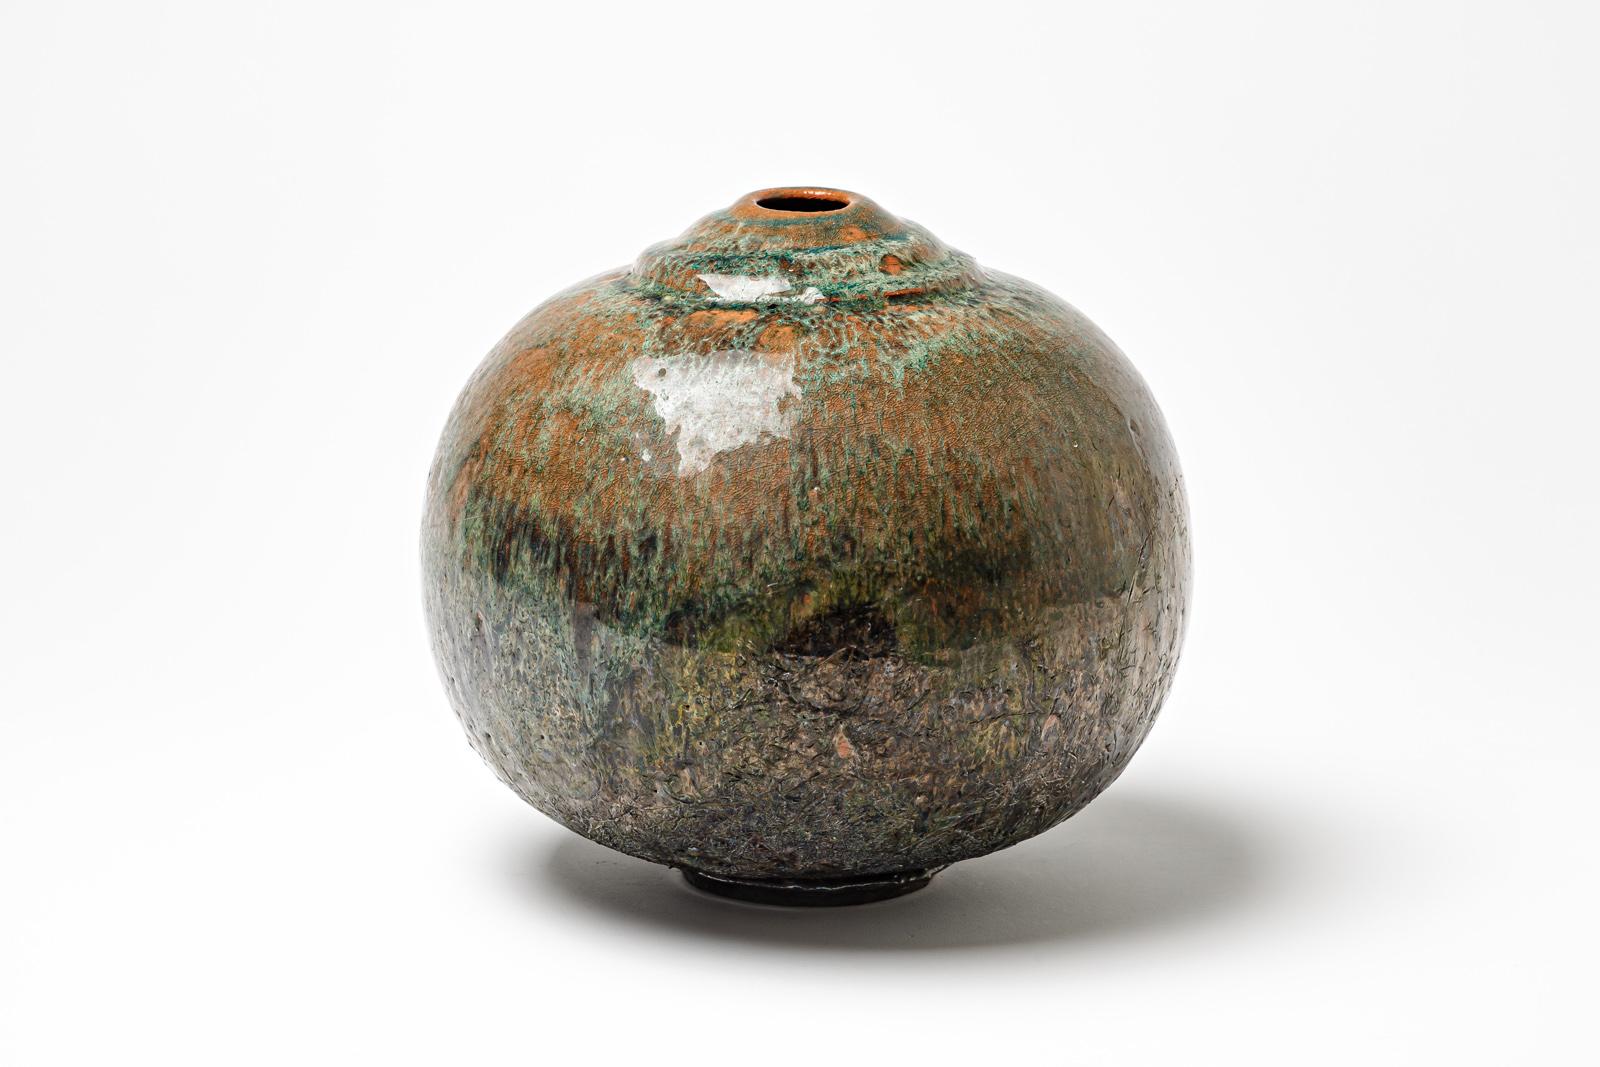 Braun/rot und grün glasierte Keramikvase von Gisèle Buthod Garçon. 
Raku gebrannt. Künstlermonogramm unter dem Sockel. CIRCA 1980-1990.
H : 8,7' x 7,8' Zoll.